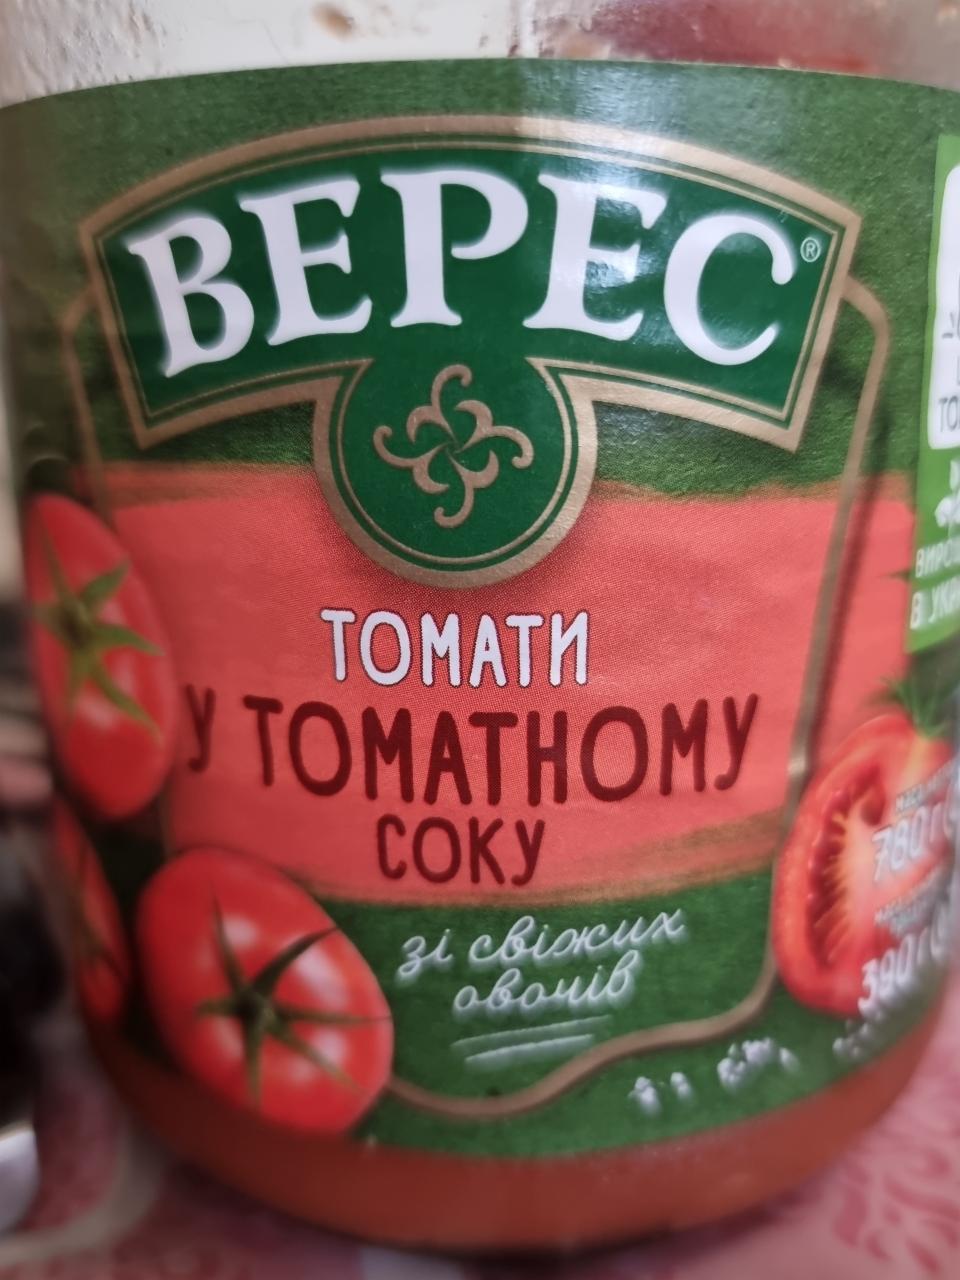 Фото - Томати в томатному соку Верес